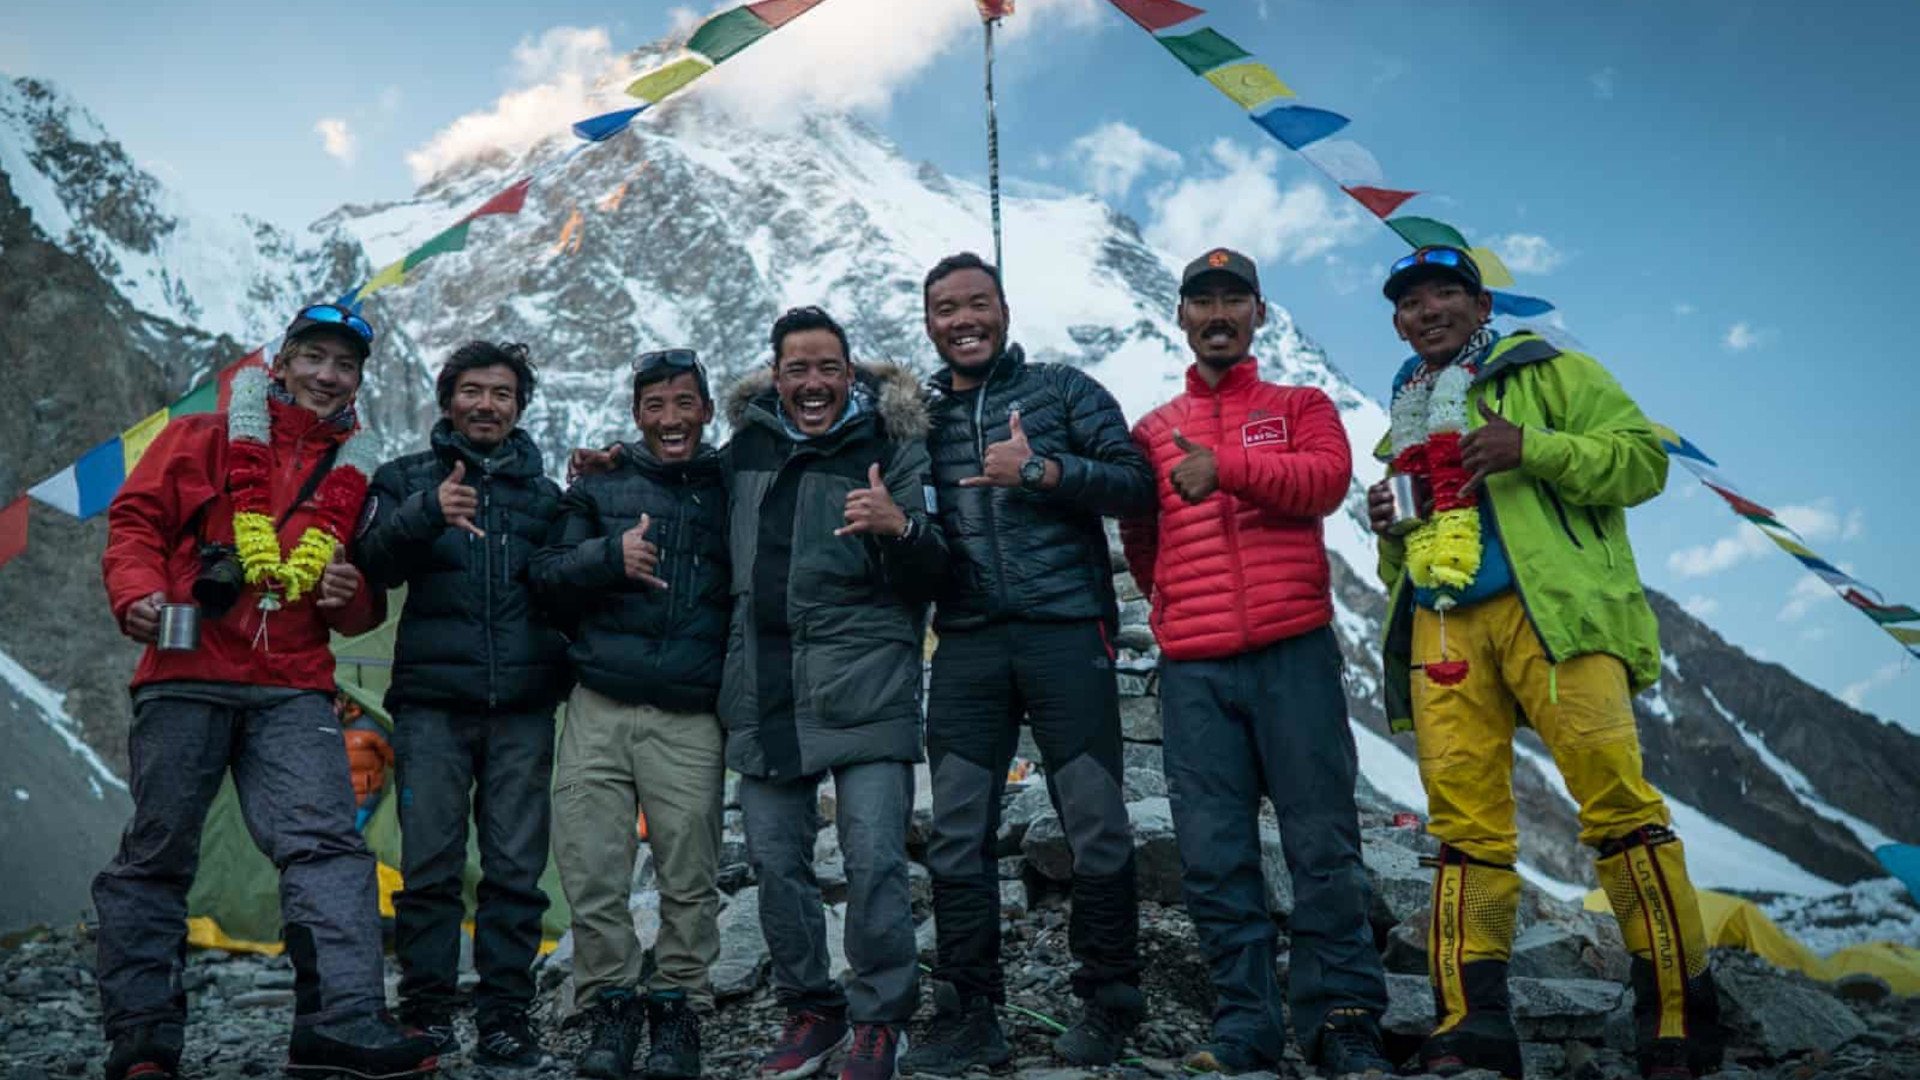 Nims Purja y su equipo después de subir los 14 picos de más de 8000 m